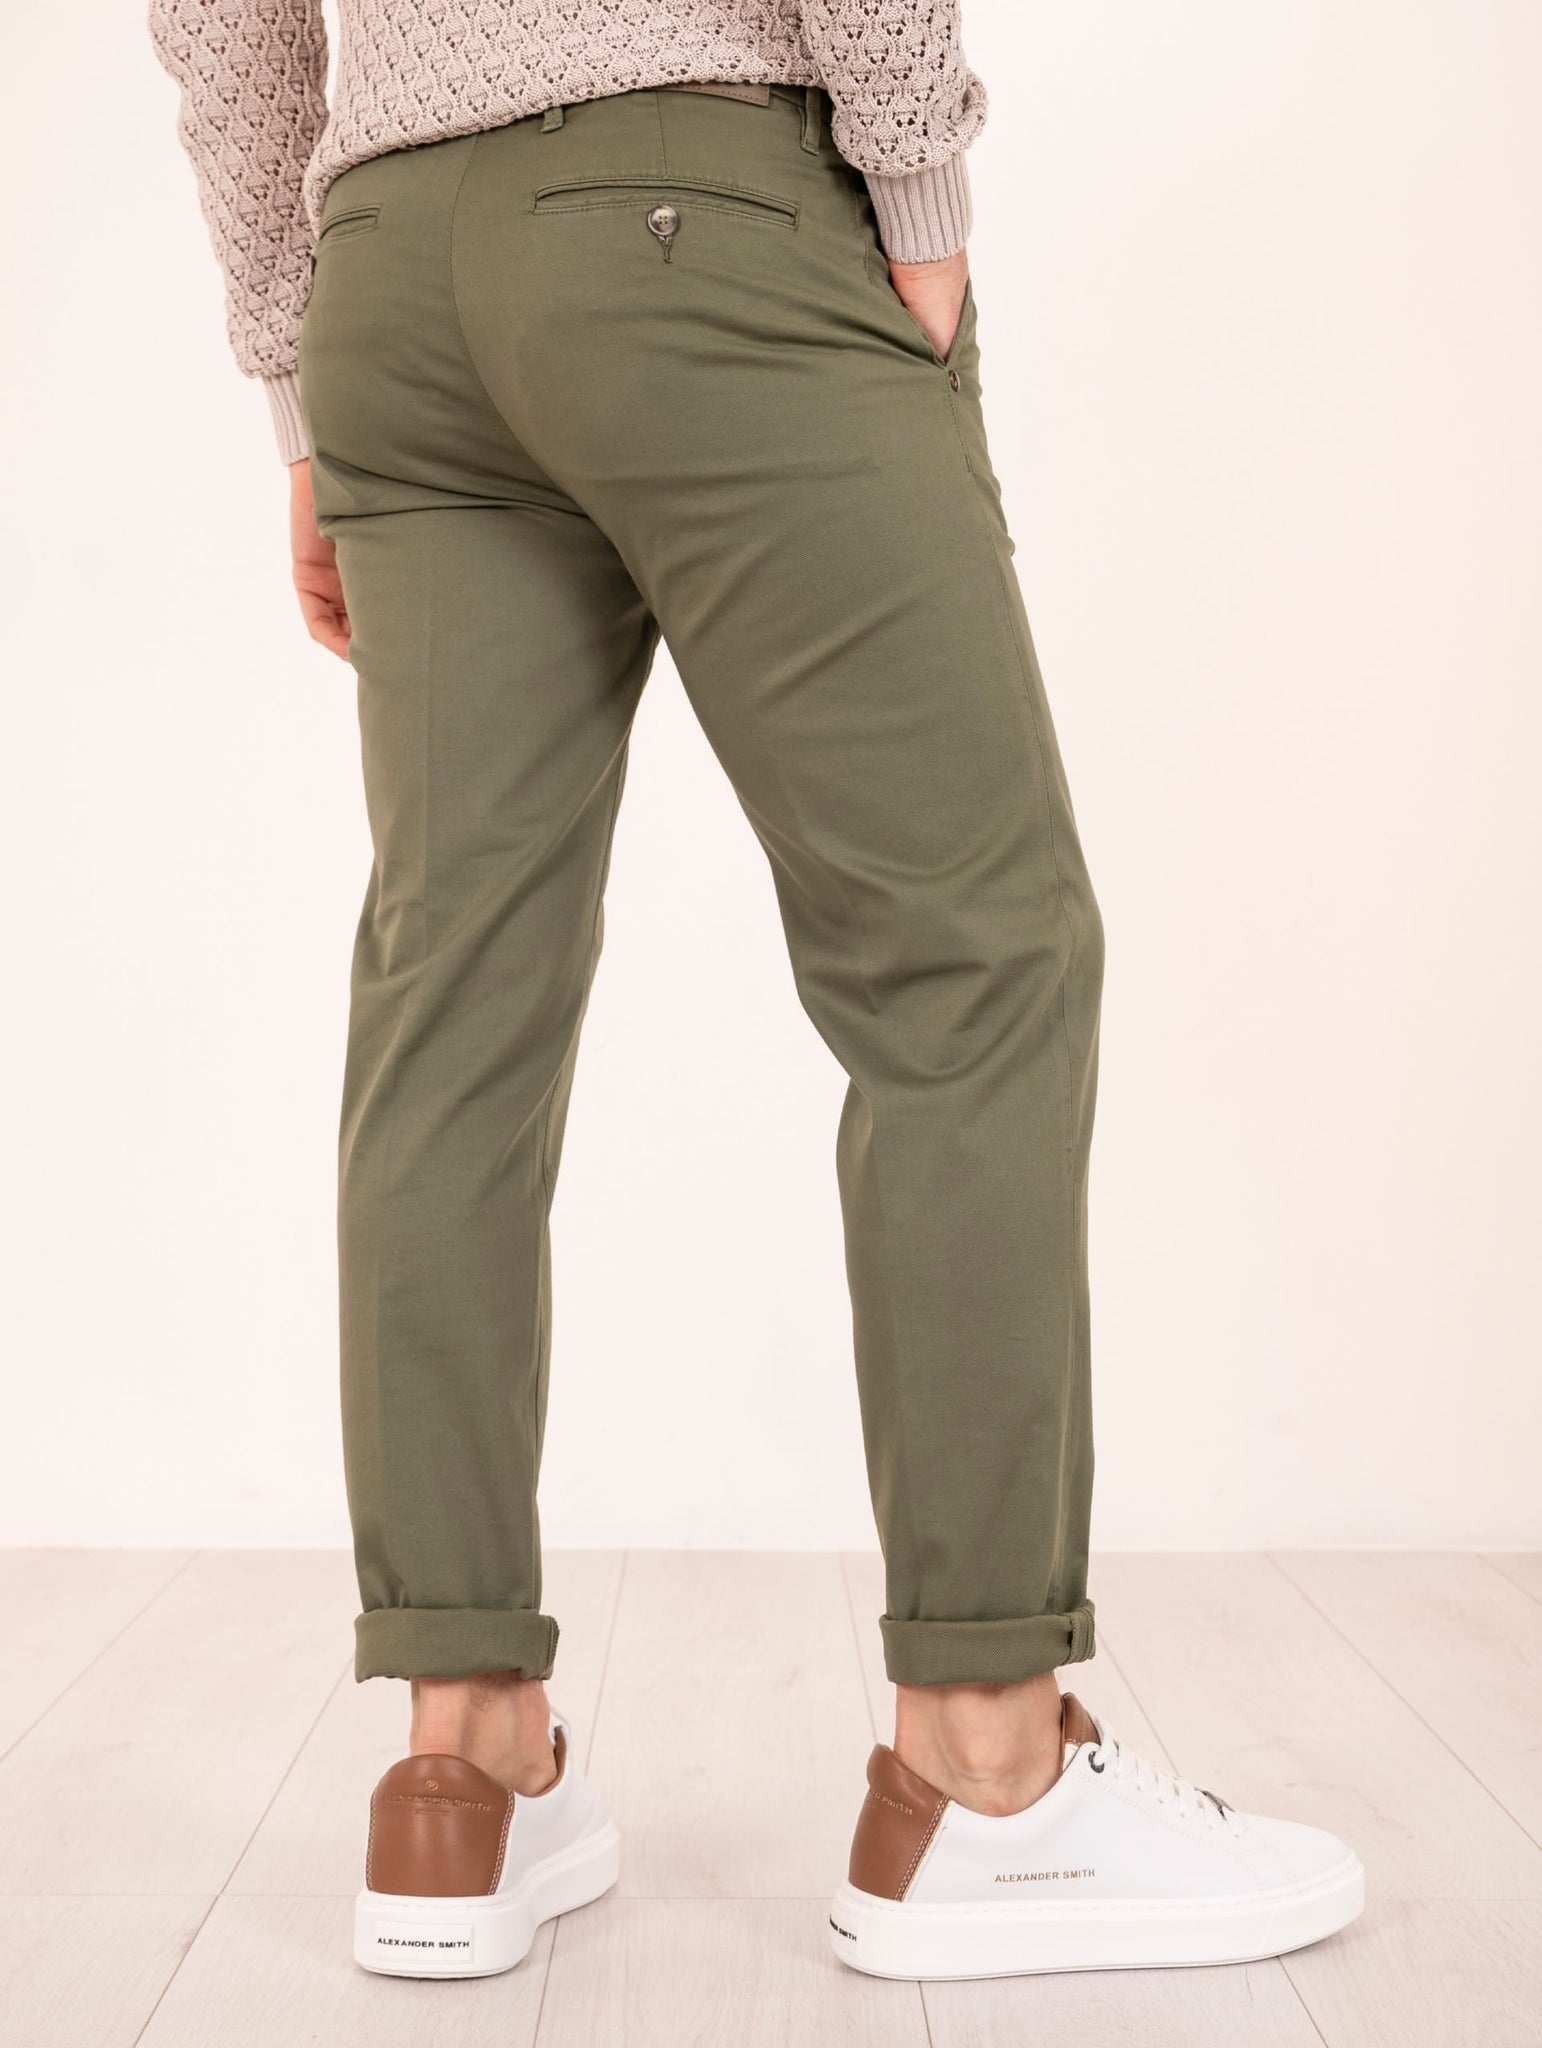 Pantalone Re-Hash in Cotone e Lyocell Militare